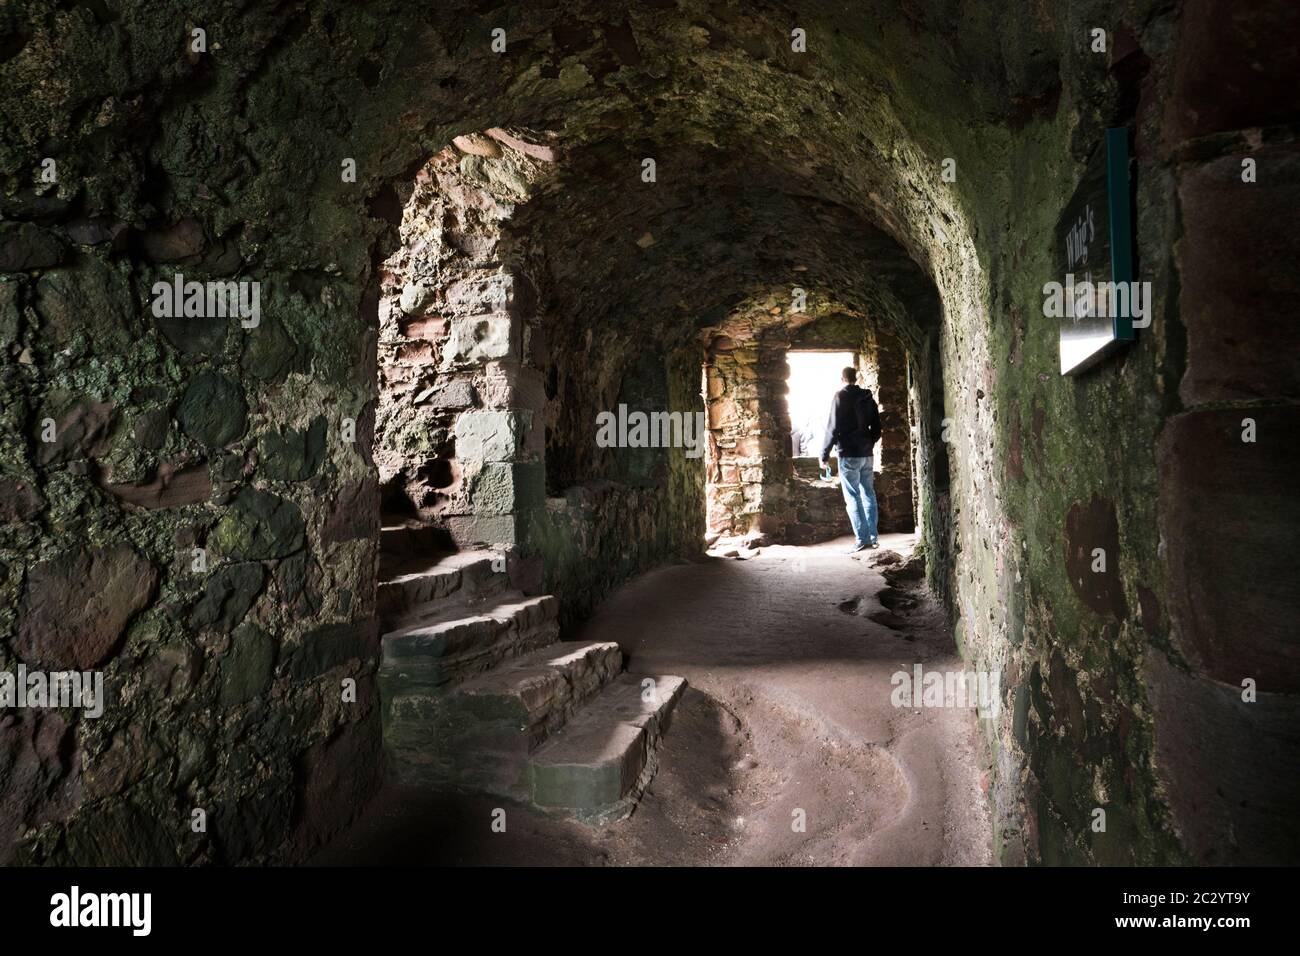 Un hombre adulto explora una antigua ruina de piedra abandonada con un techo curvado a lo largo del pasillo con escaleras y una ventana dentro del castillo de Dunnottar; Escocia, Foto de stock